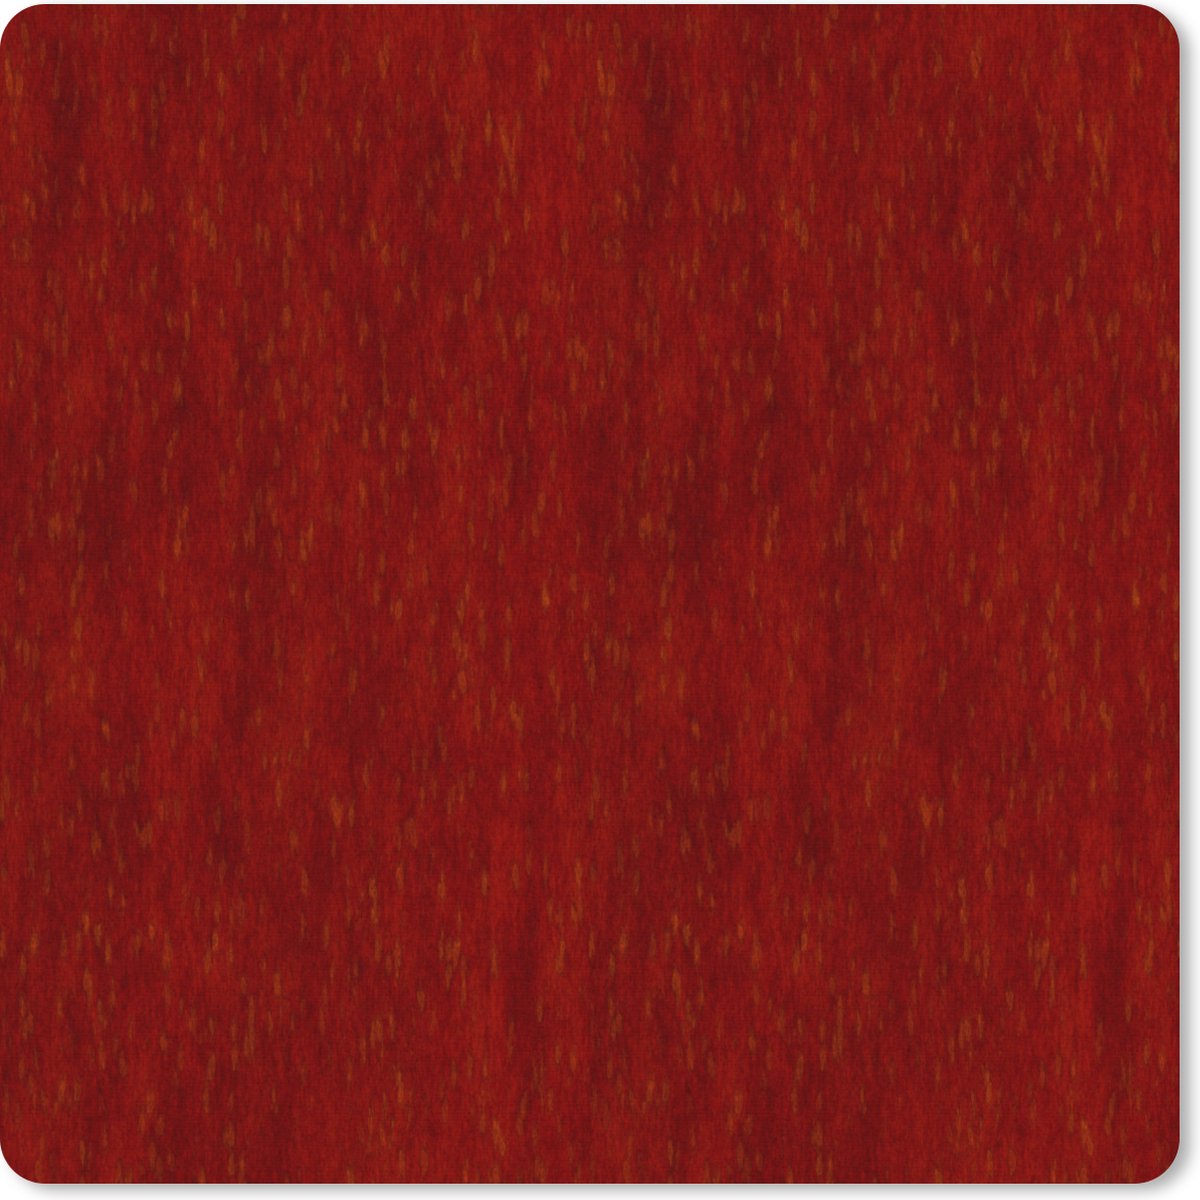 Muismat XXL - Bureau onderlegger - Bureau mat - Roest print - Rood - Patronen - 60x60 cm - XXL muismat